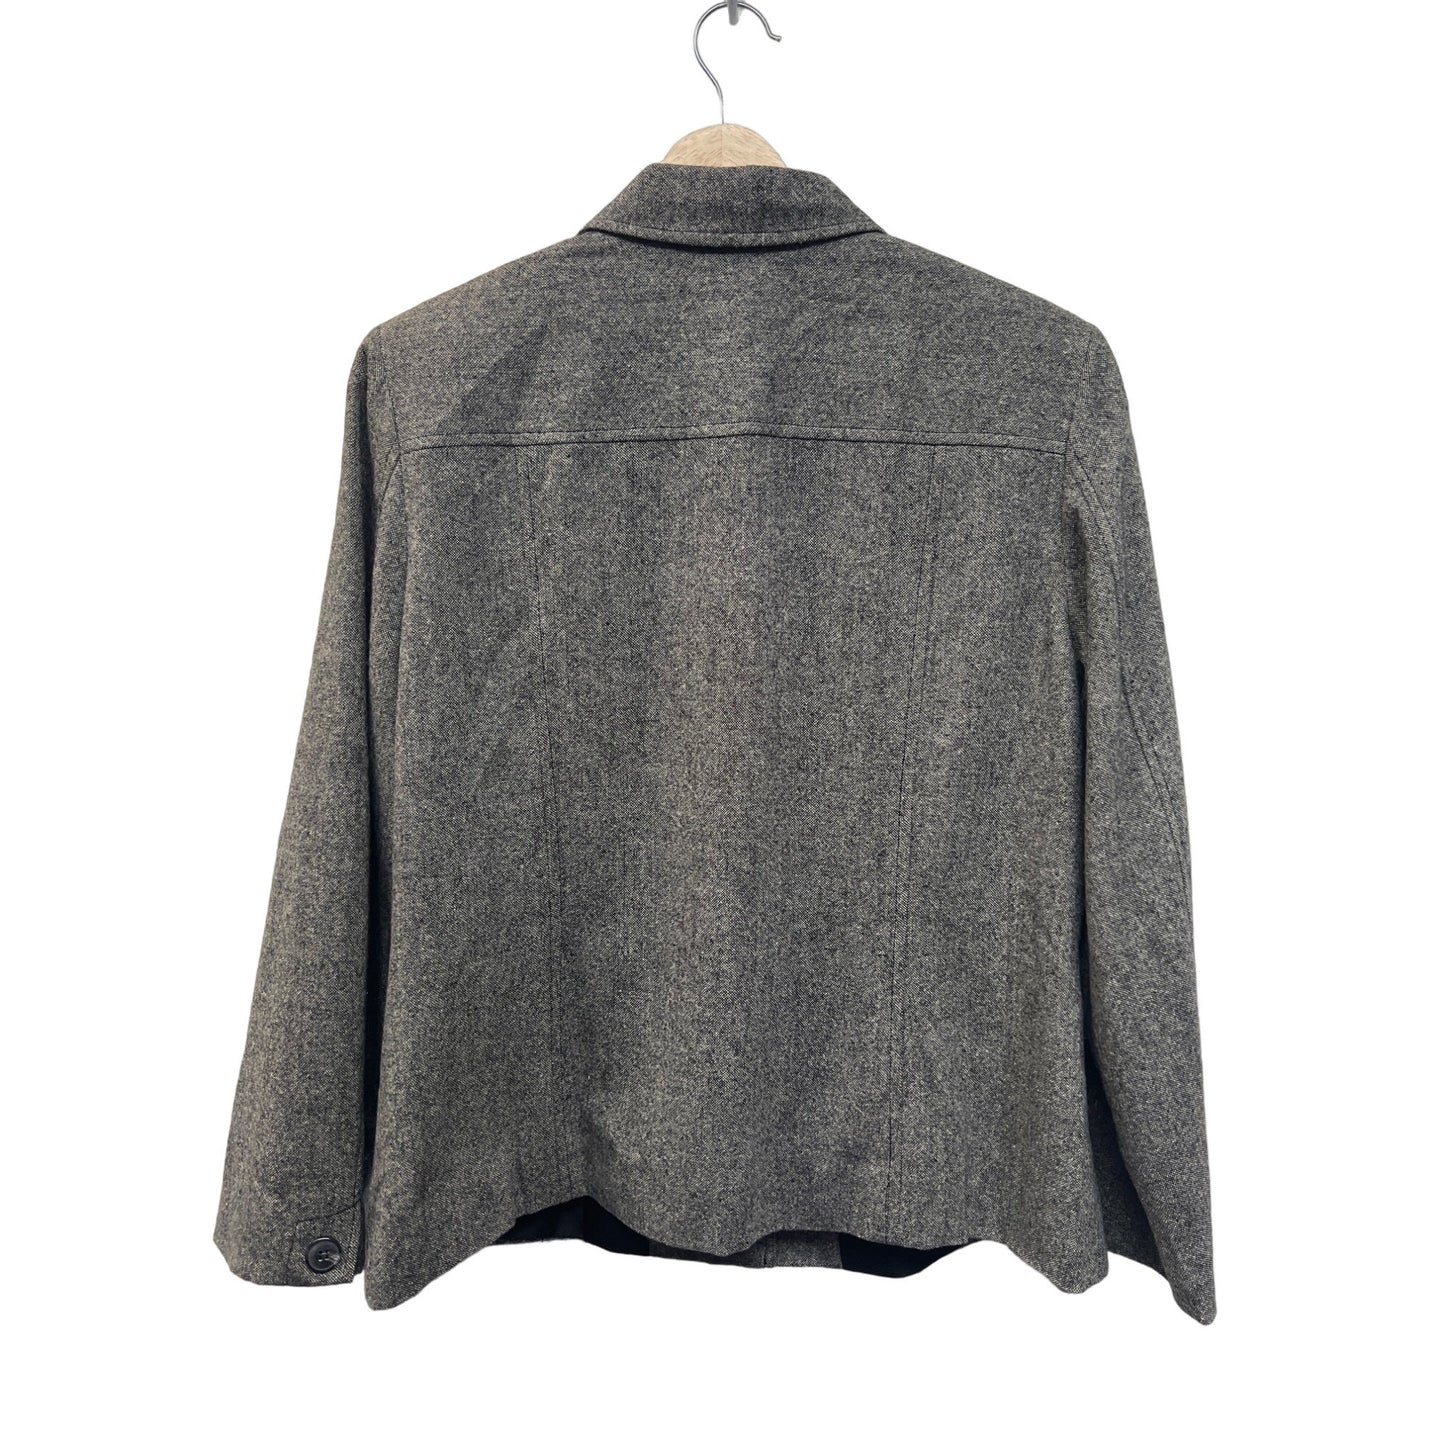 Appleseed's Petites Gray Wool Silk Blend Tweed Blazer Jacket